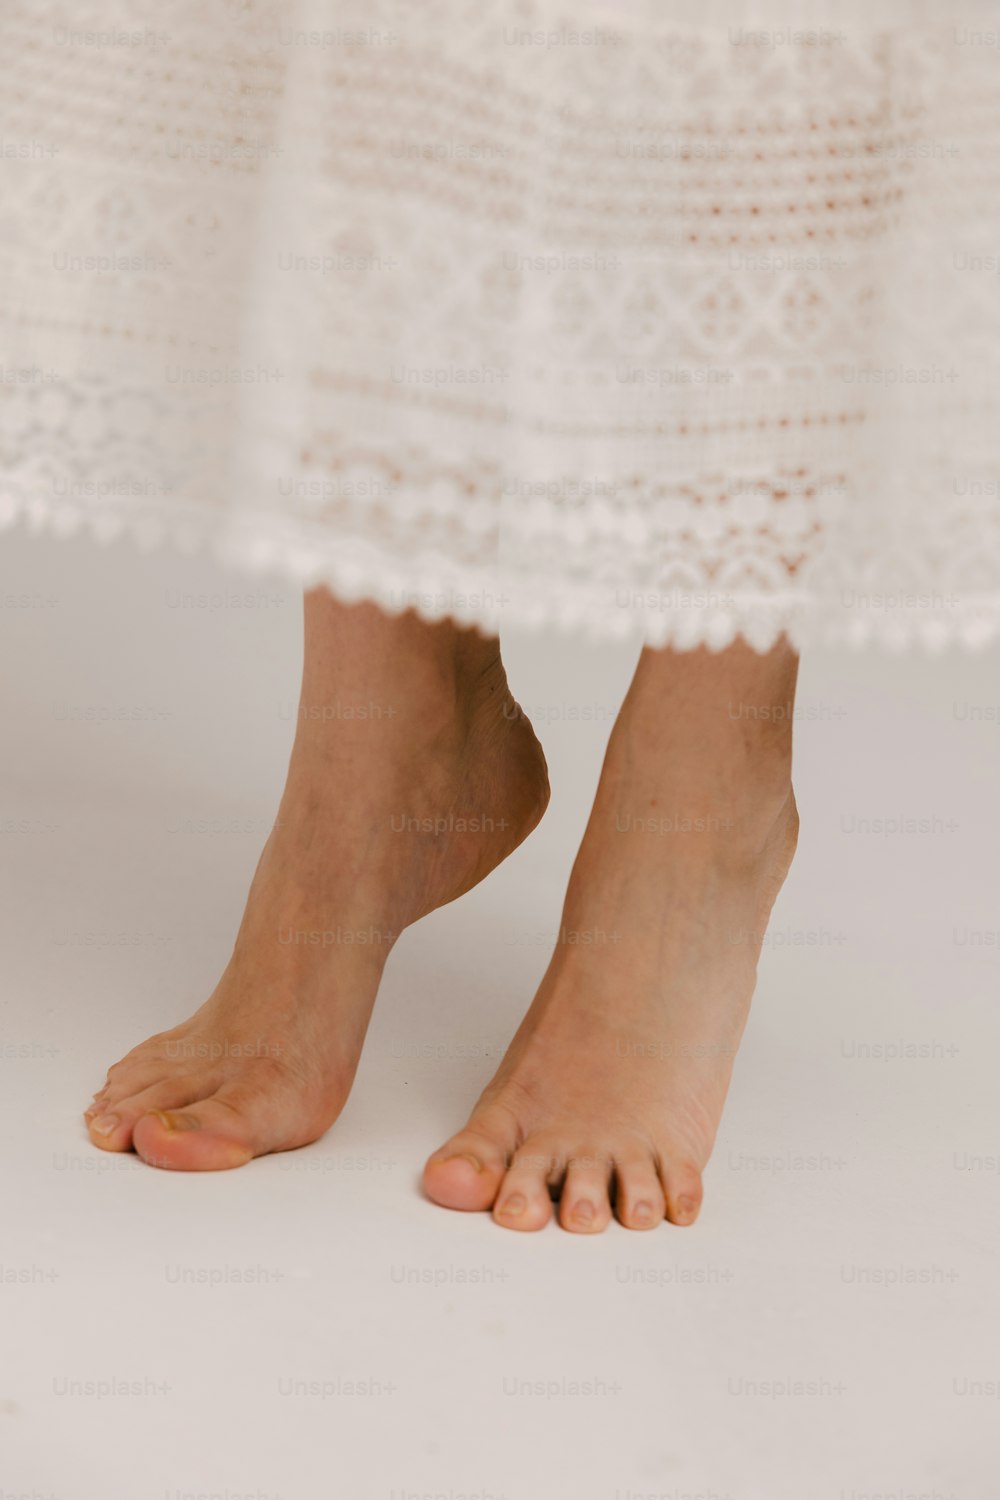 um close up dos p�és descalços de uma pessoa usando um vestido branco